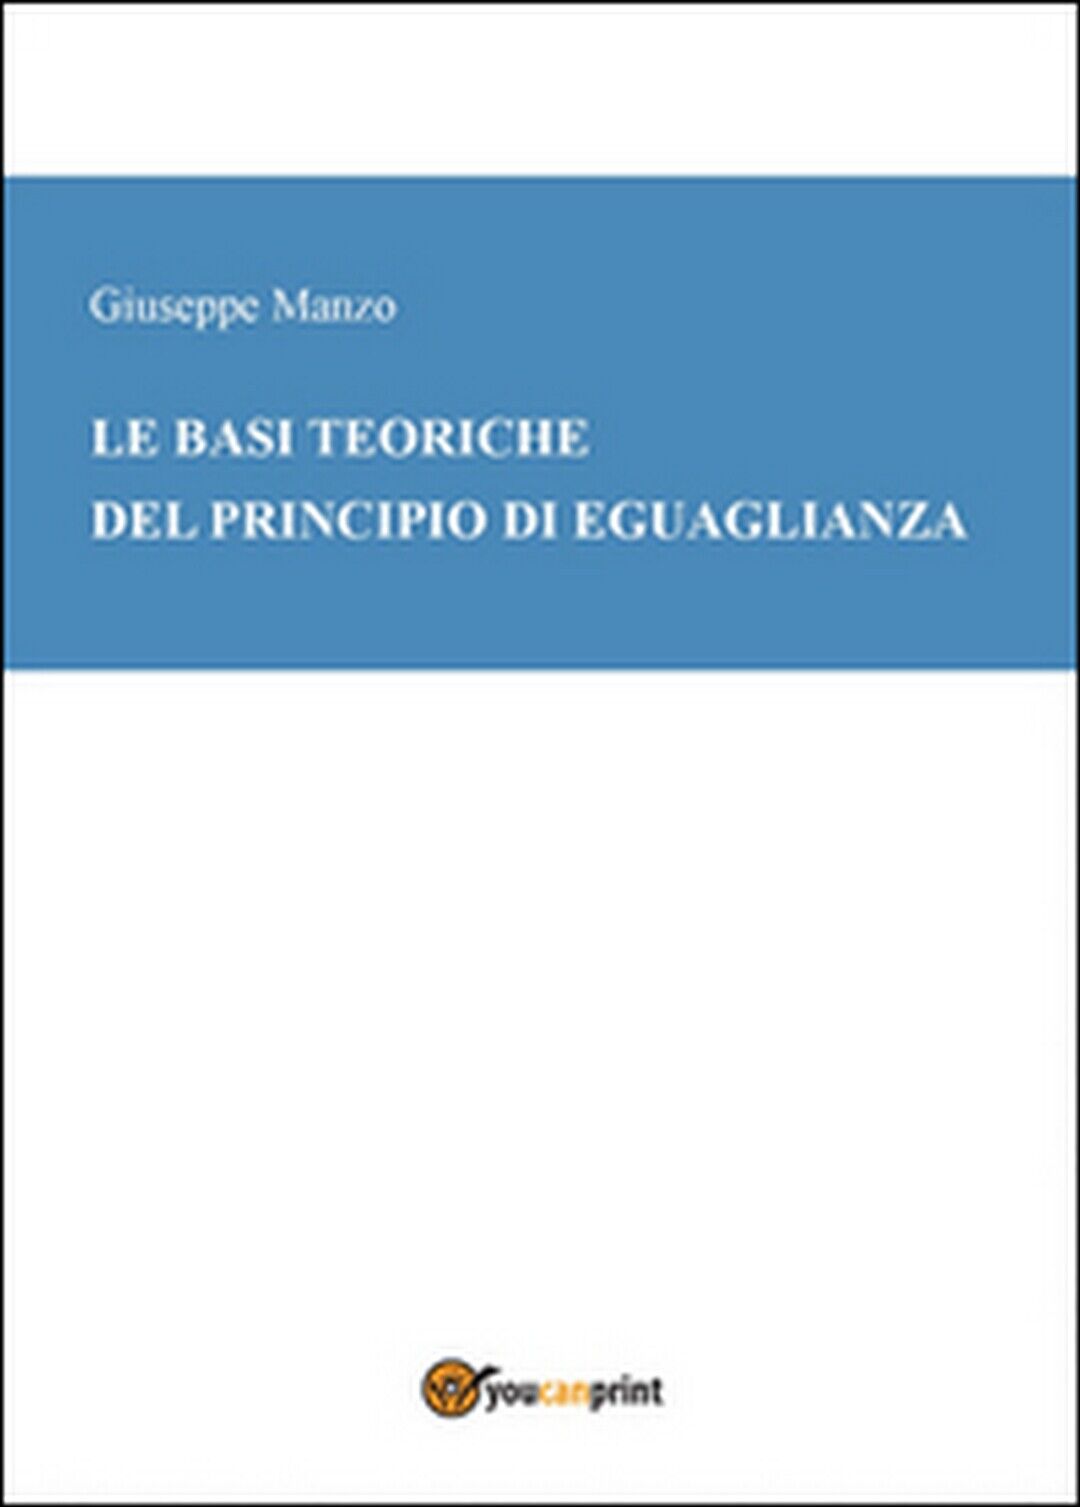 Le basi teoriche del principio di eguaglianza, Giuseppe Manzo,  2015,  Youcanpri